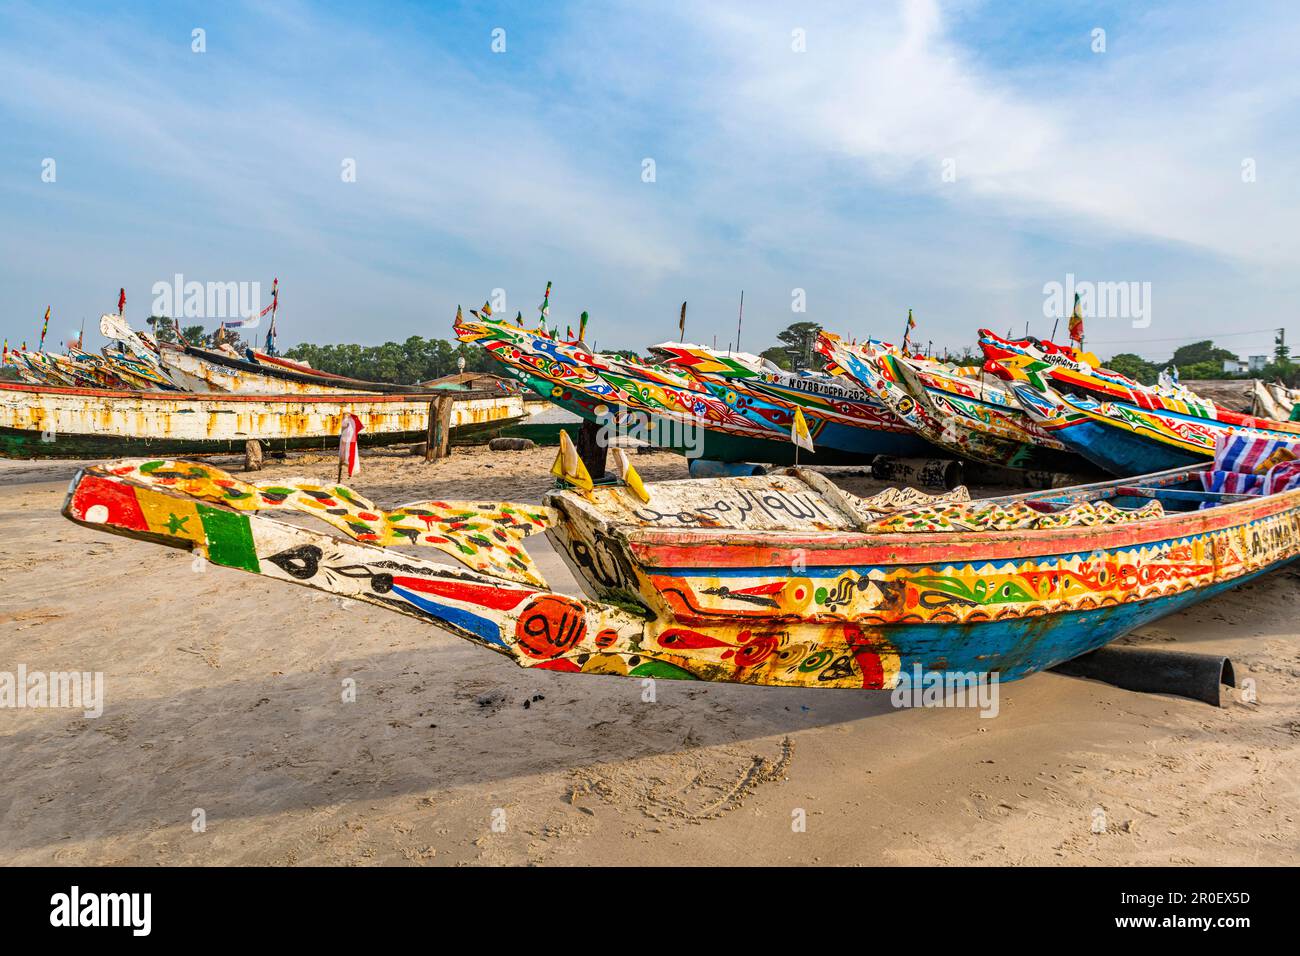 Bateaux de pêche colorés, Cap Skirring, Casamance, Sénégal Banque D'Images